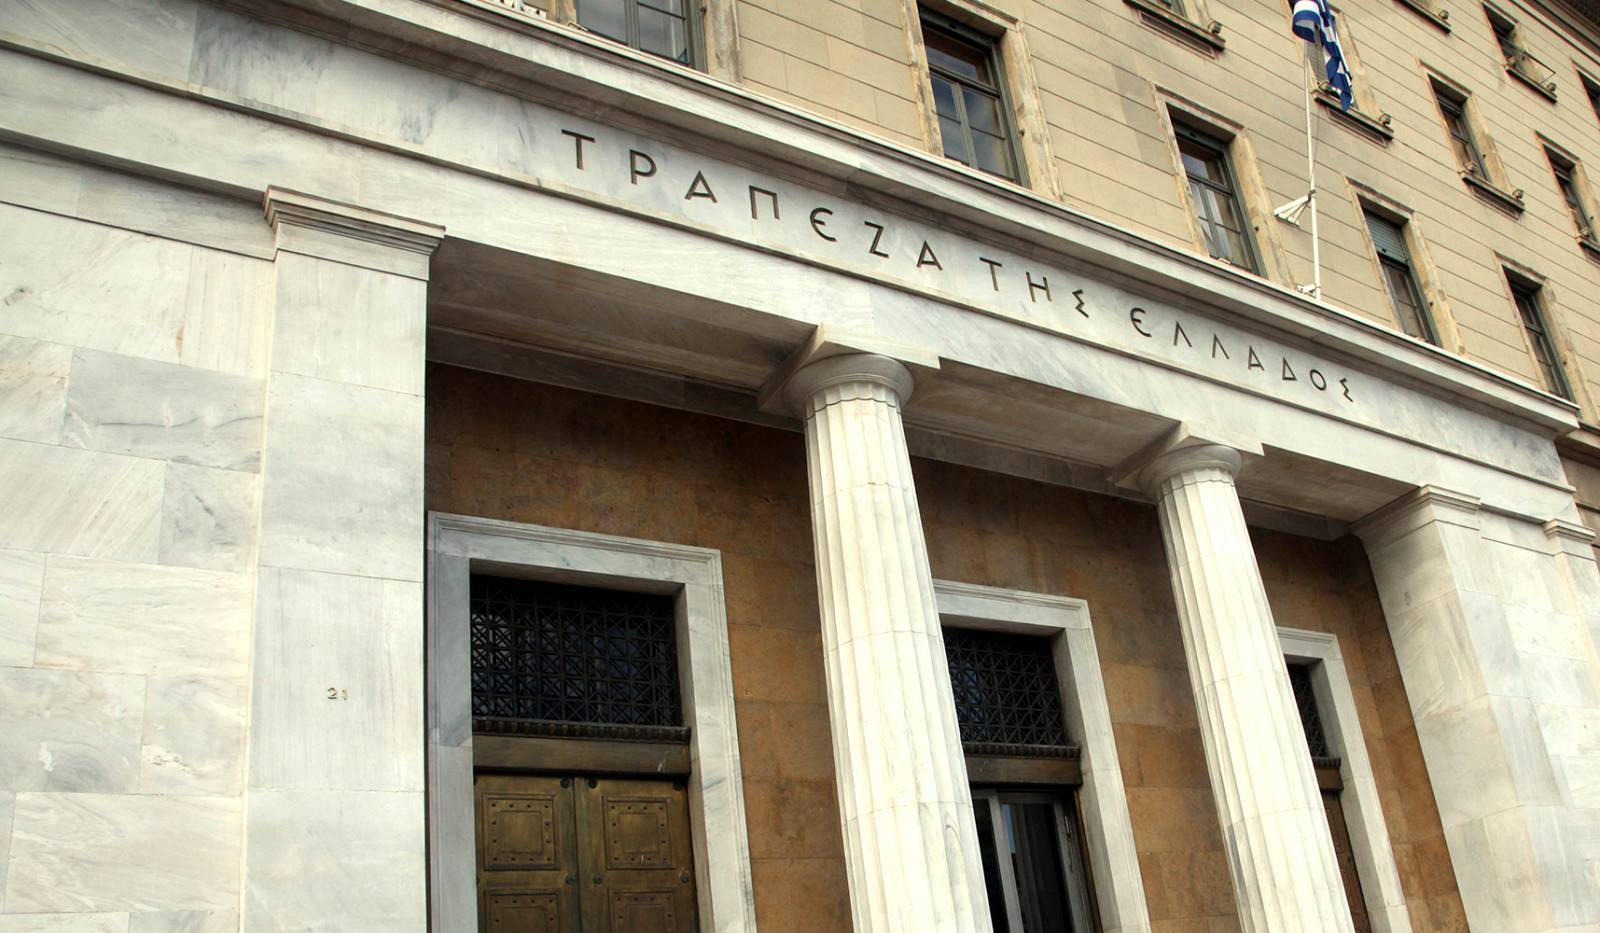 Δίωξη σε στέλεχος της Τράπεζας της Ελλάδος – Κατηγορείται για απλήρωτα προσωπικά δάνεια ύψους 800.000 ευρώ